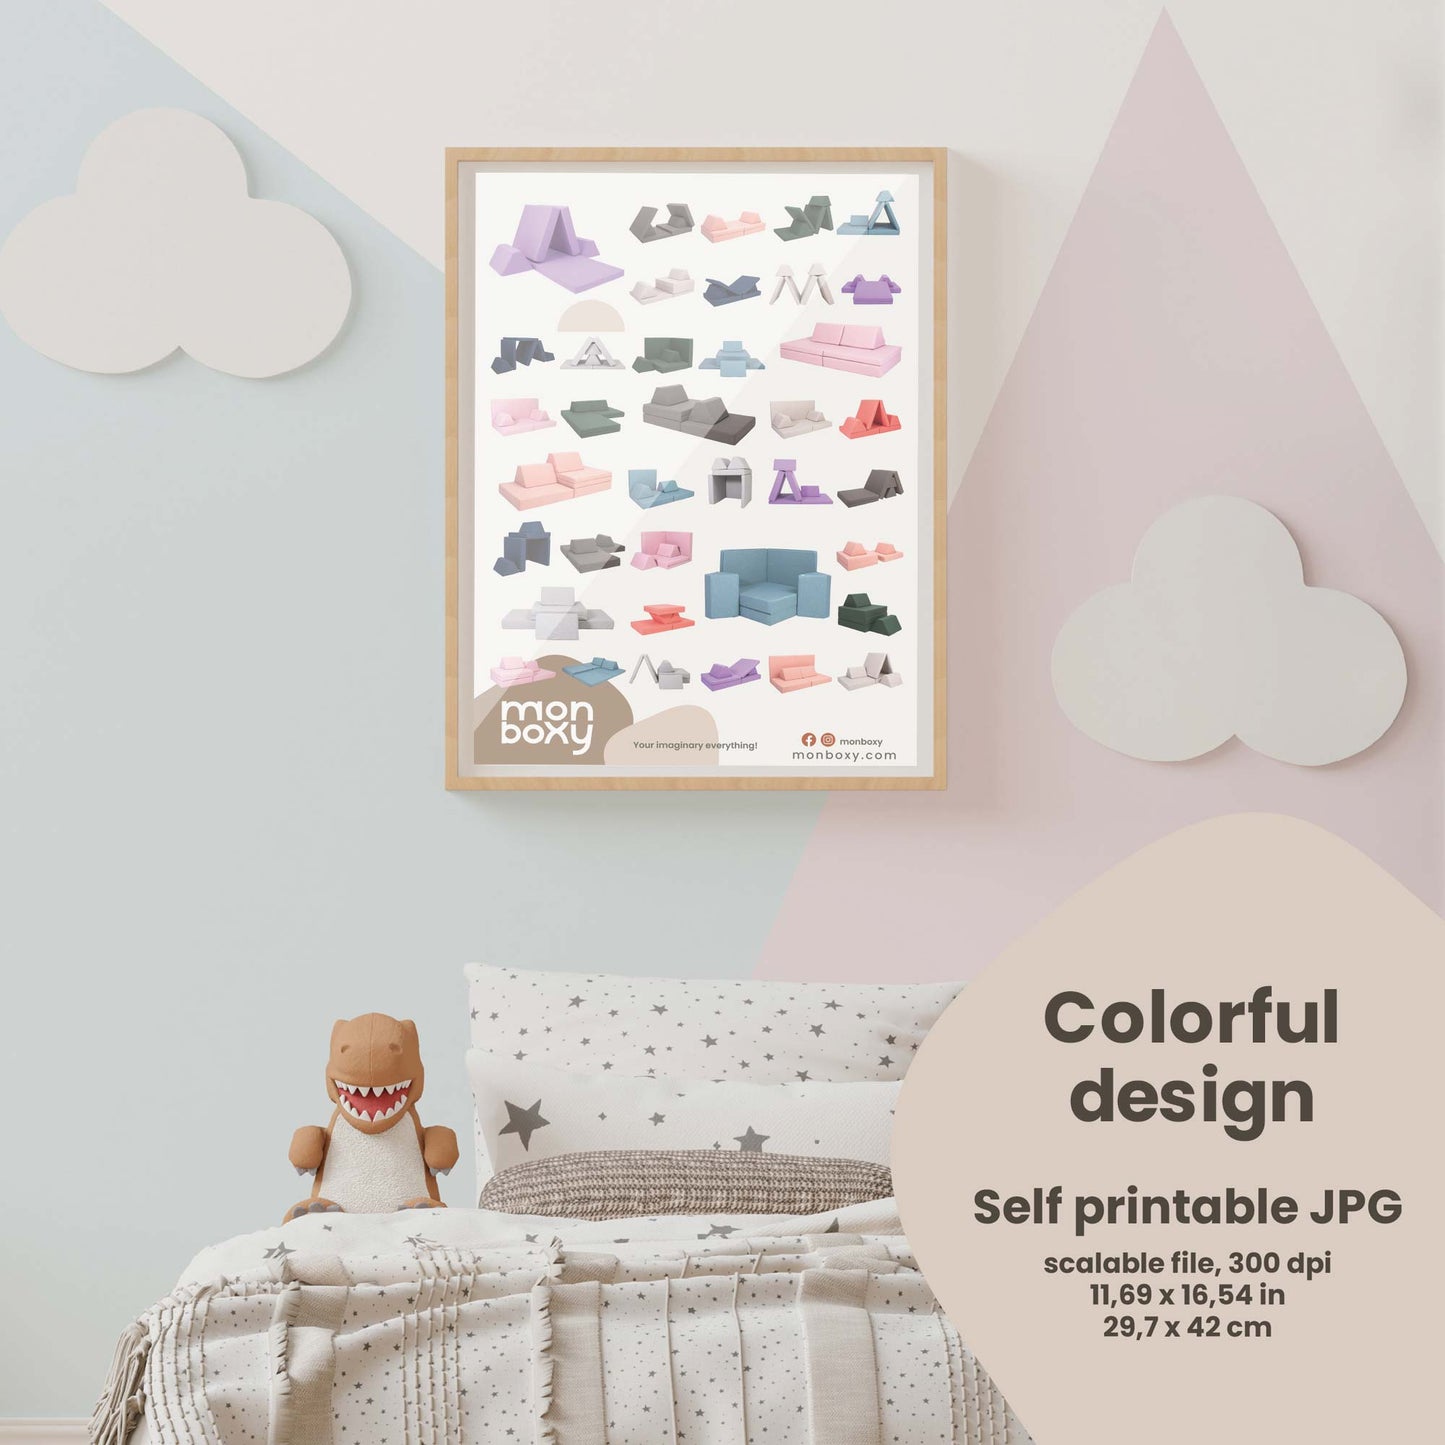 Póster de ideas para construir sofás de actividades - Colorido | descarga digital